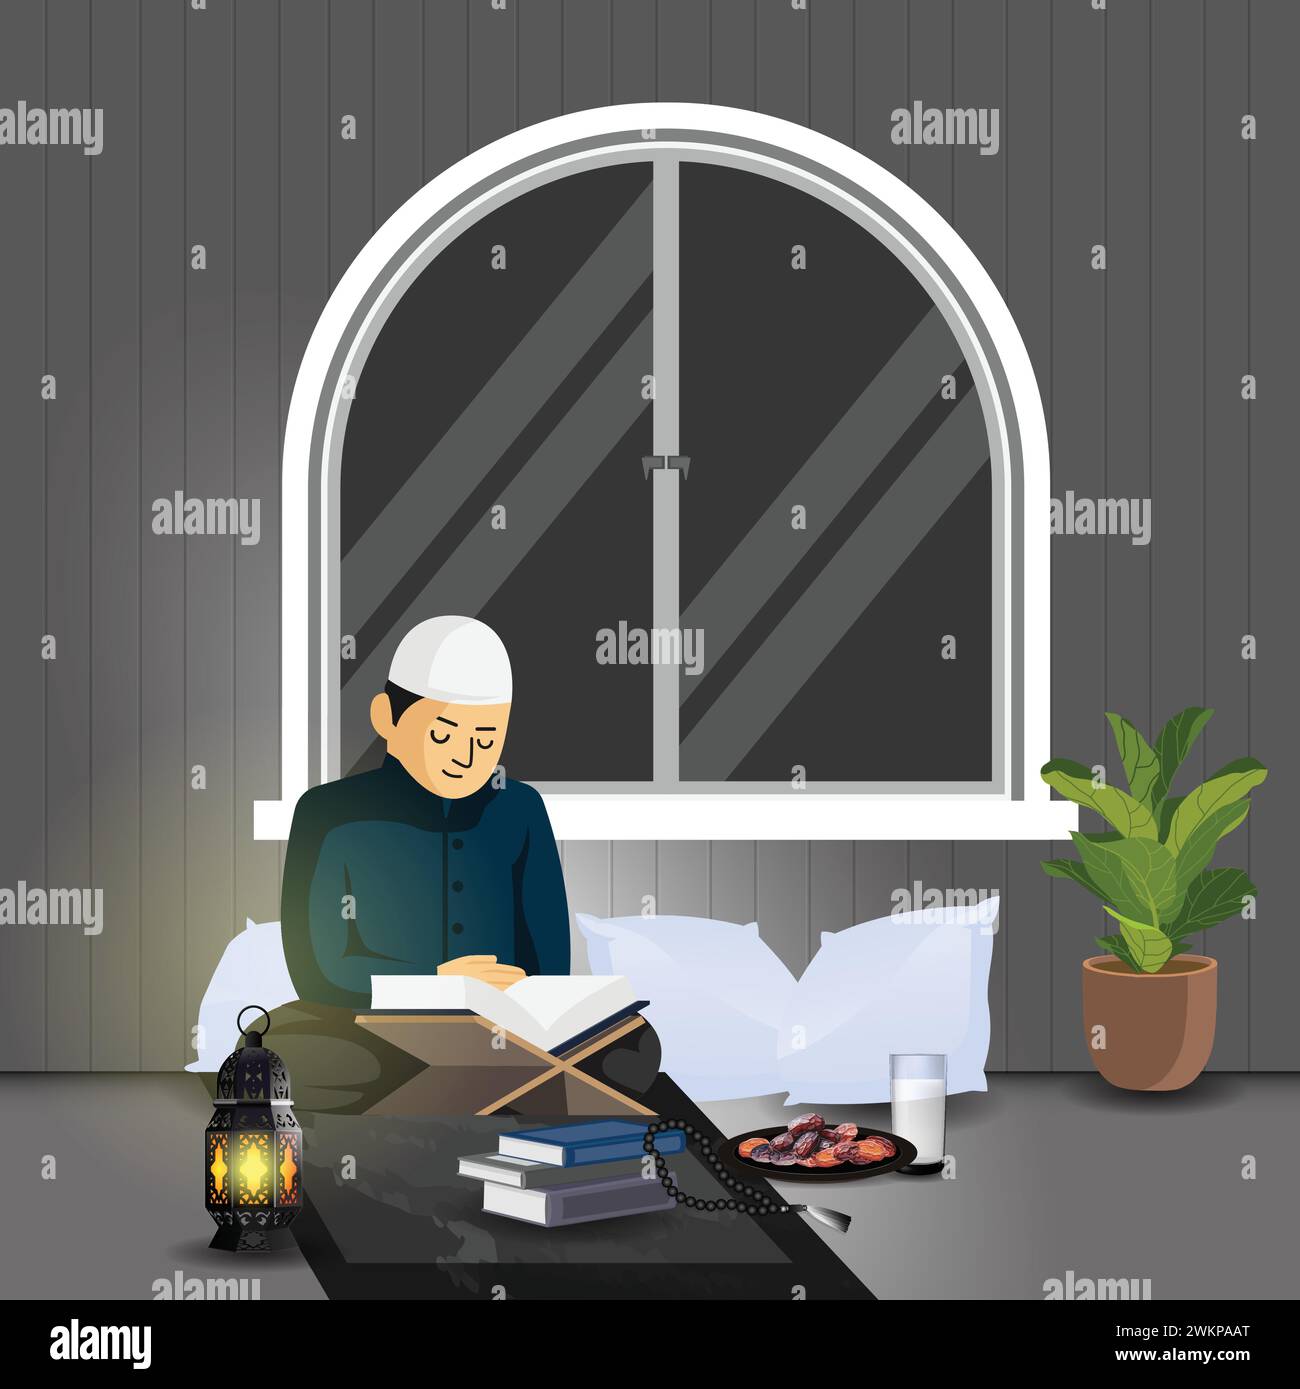 L'uomo legge il Corano durante il Ramadan, il mese sacro dell'Islam. Illustrazione vettoriale. Illustrazione Vettoriale